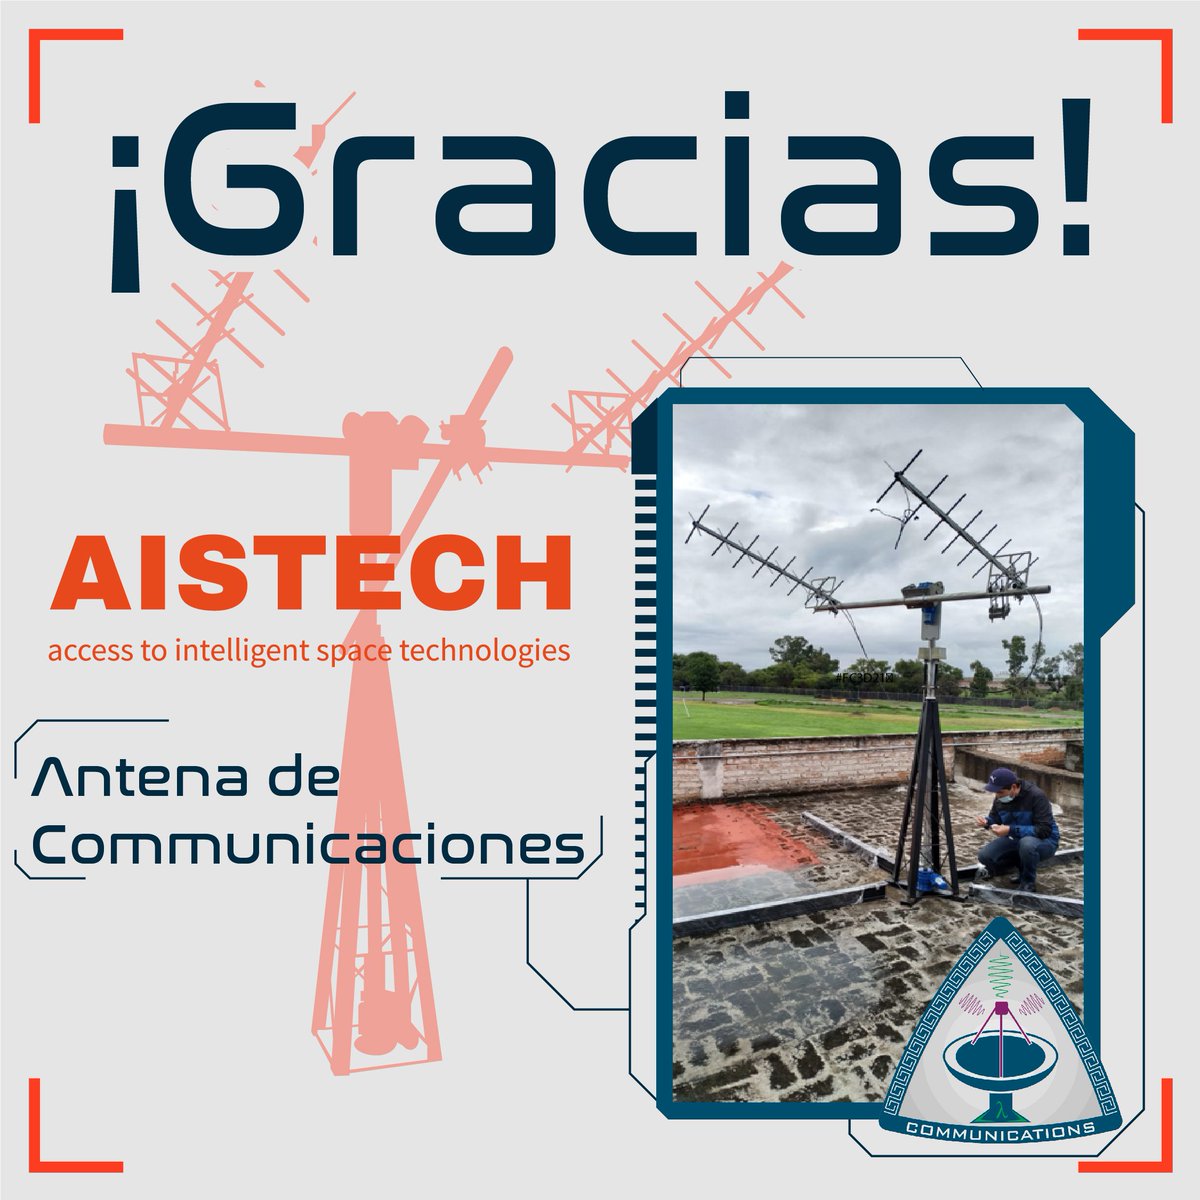 Agradecemos a @AistechSpace por su apoyo para alcanzar nuestra misión. Gracias a esta antena de comunicaciones estamos un paso más cerca de llegar al espacio. 🛰️ #SpaceAgency #universe #nanosatélite #STEMWrites #ProyectoEspacial #CienciayTecnología #TalentoEnÓrbita #TeamColibrí